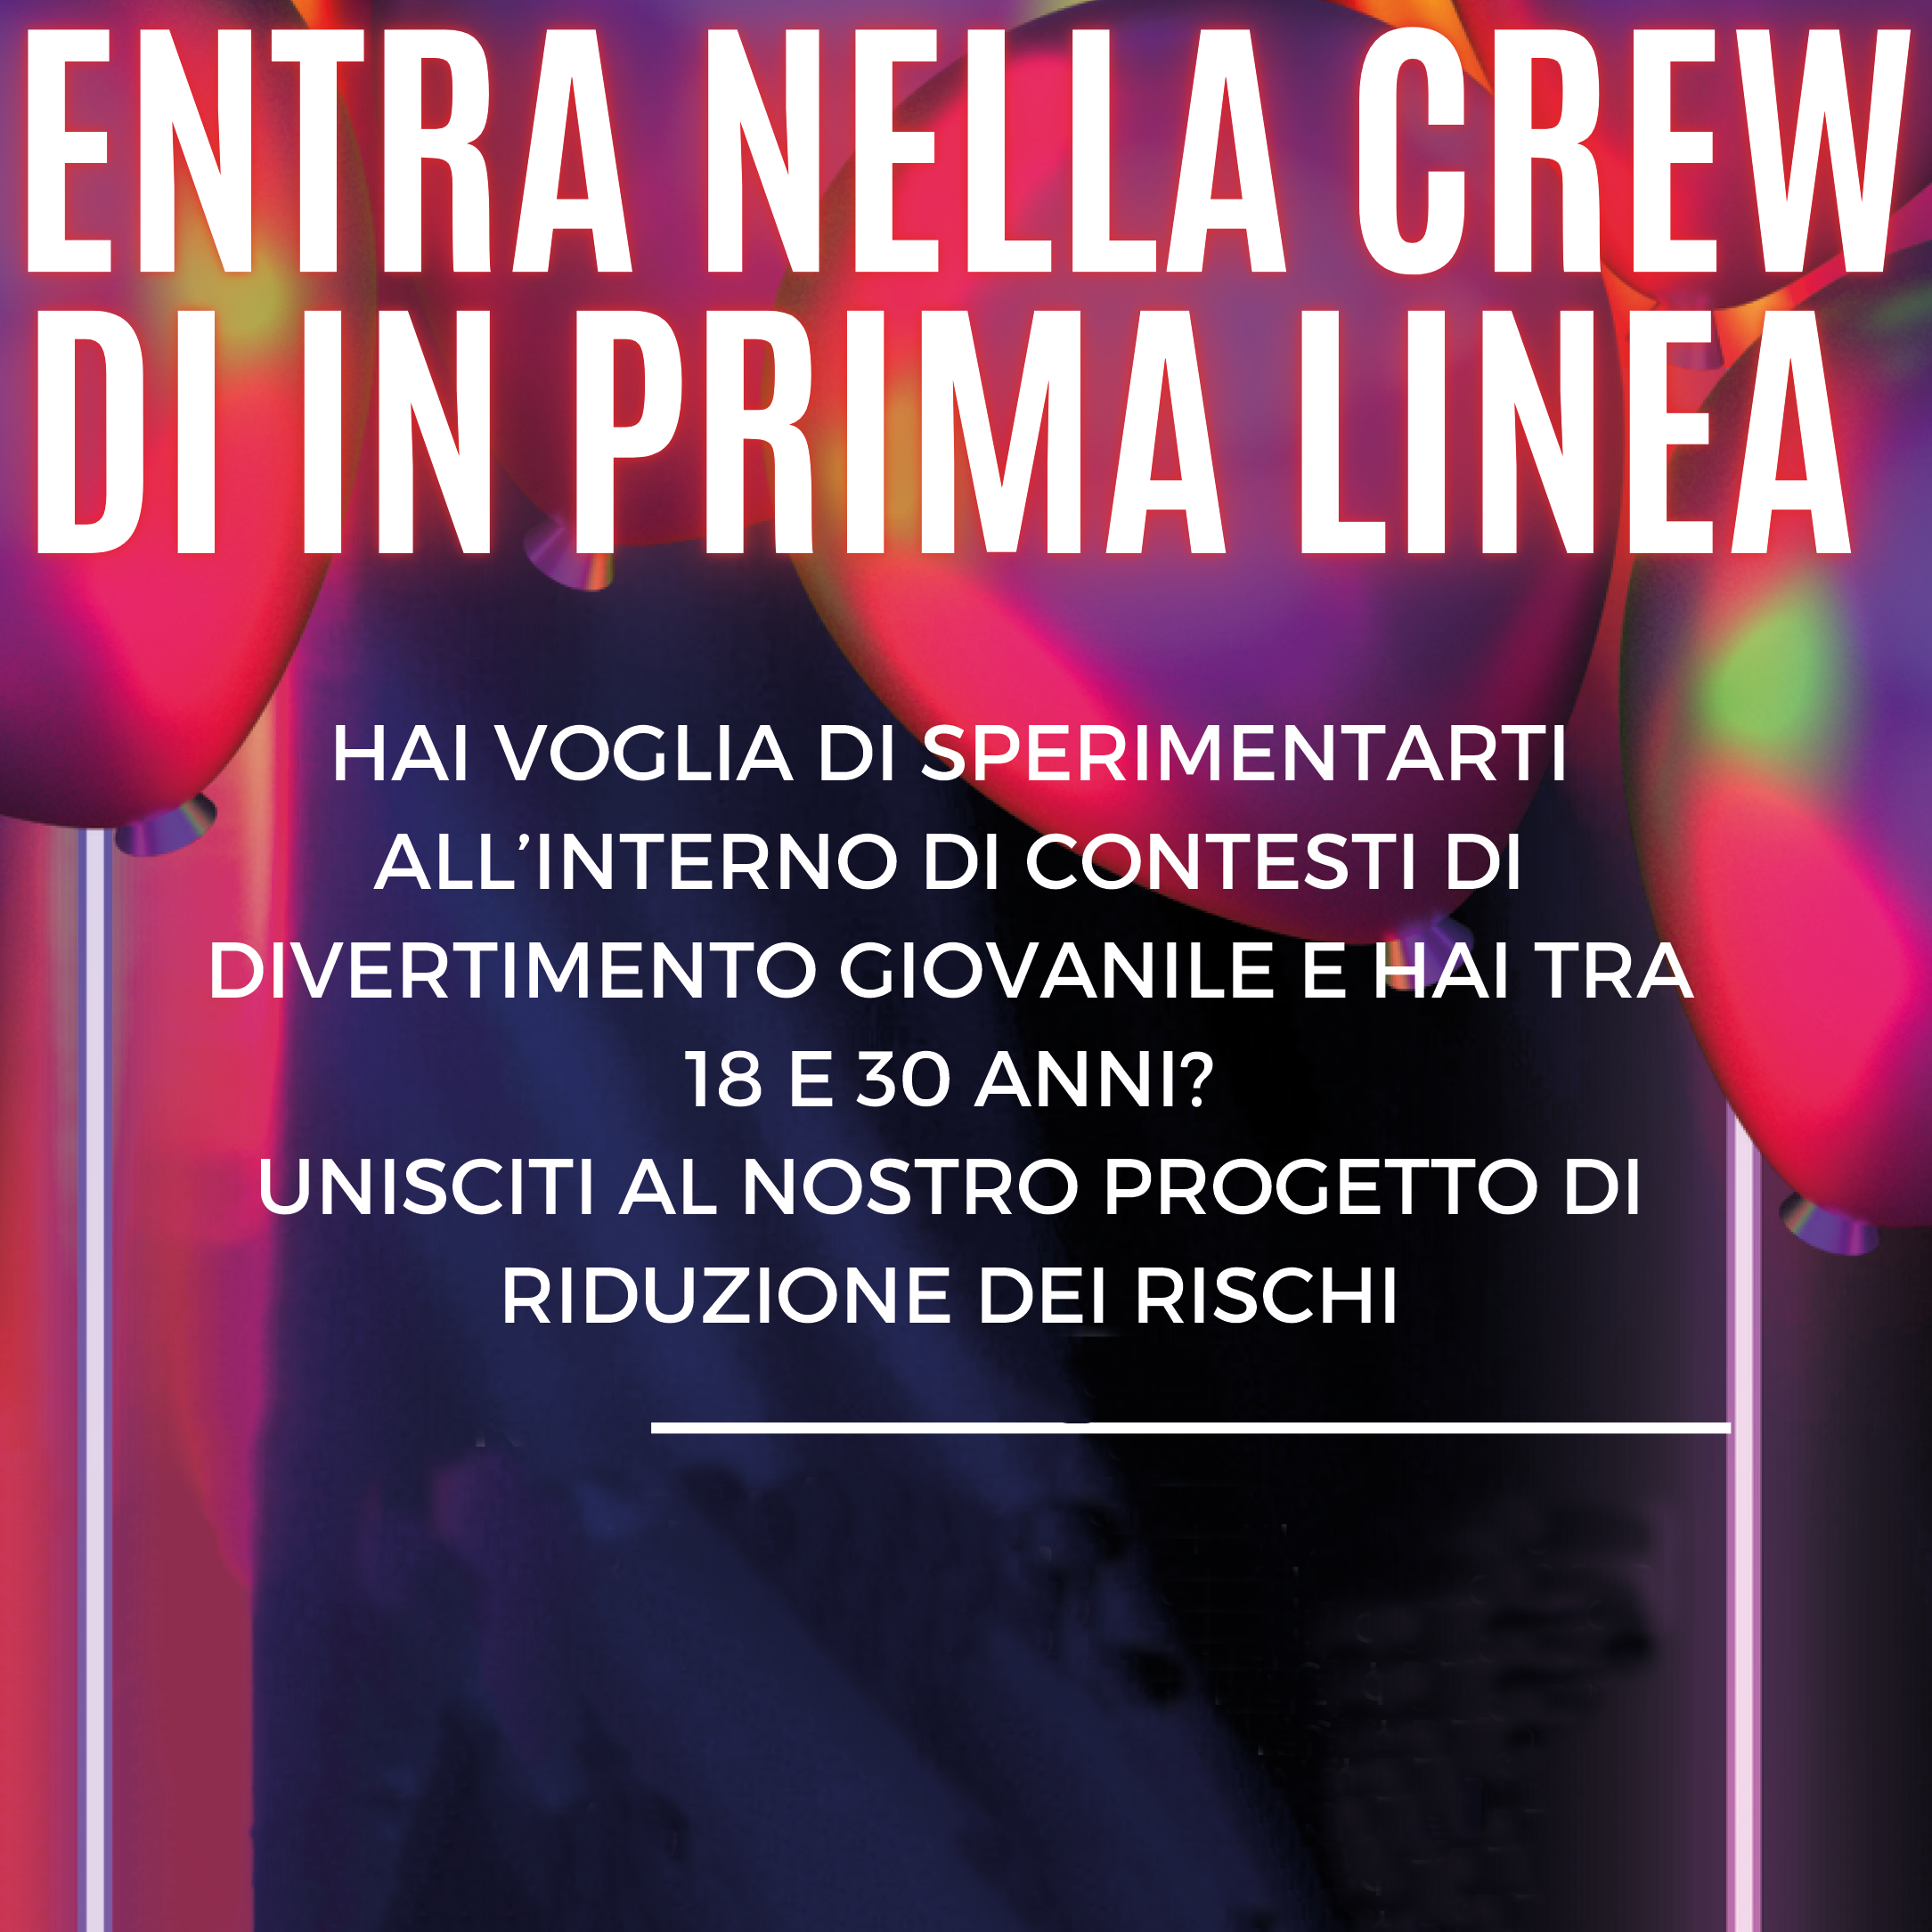 Immagine Entra nella crew di IN PRIMA LINEA!